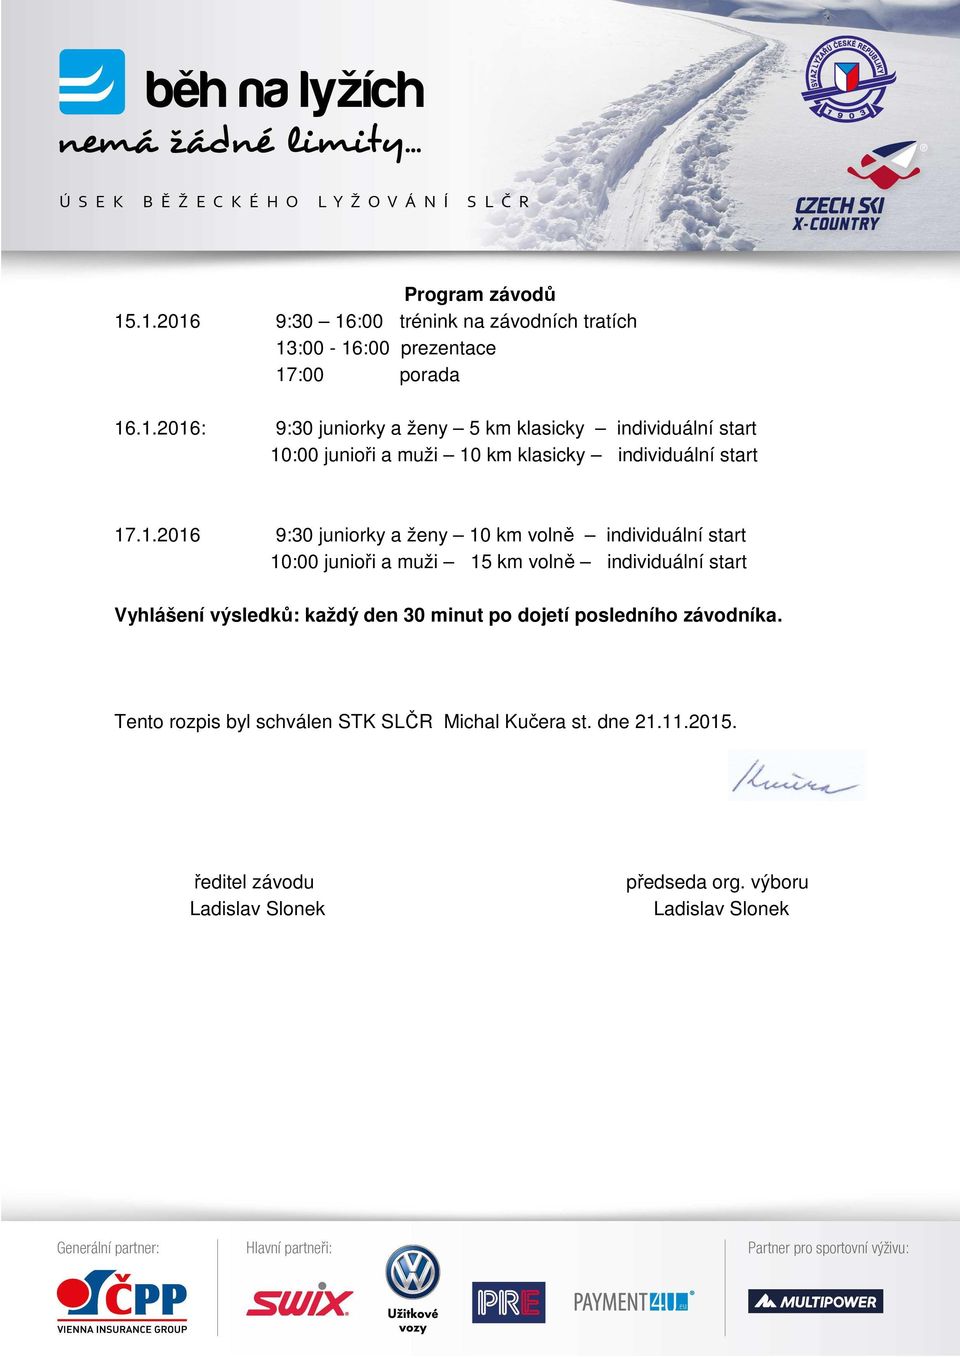 každý den 30 minut po dojetí posledního závodníka. Tento rozpis byl schválen STK SLČR Michal Kučera st. dne 21.11.2015.